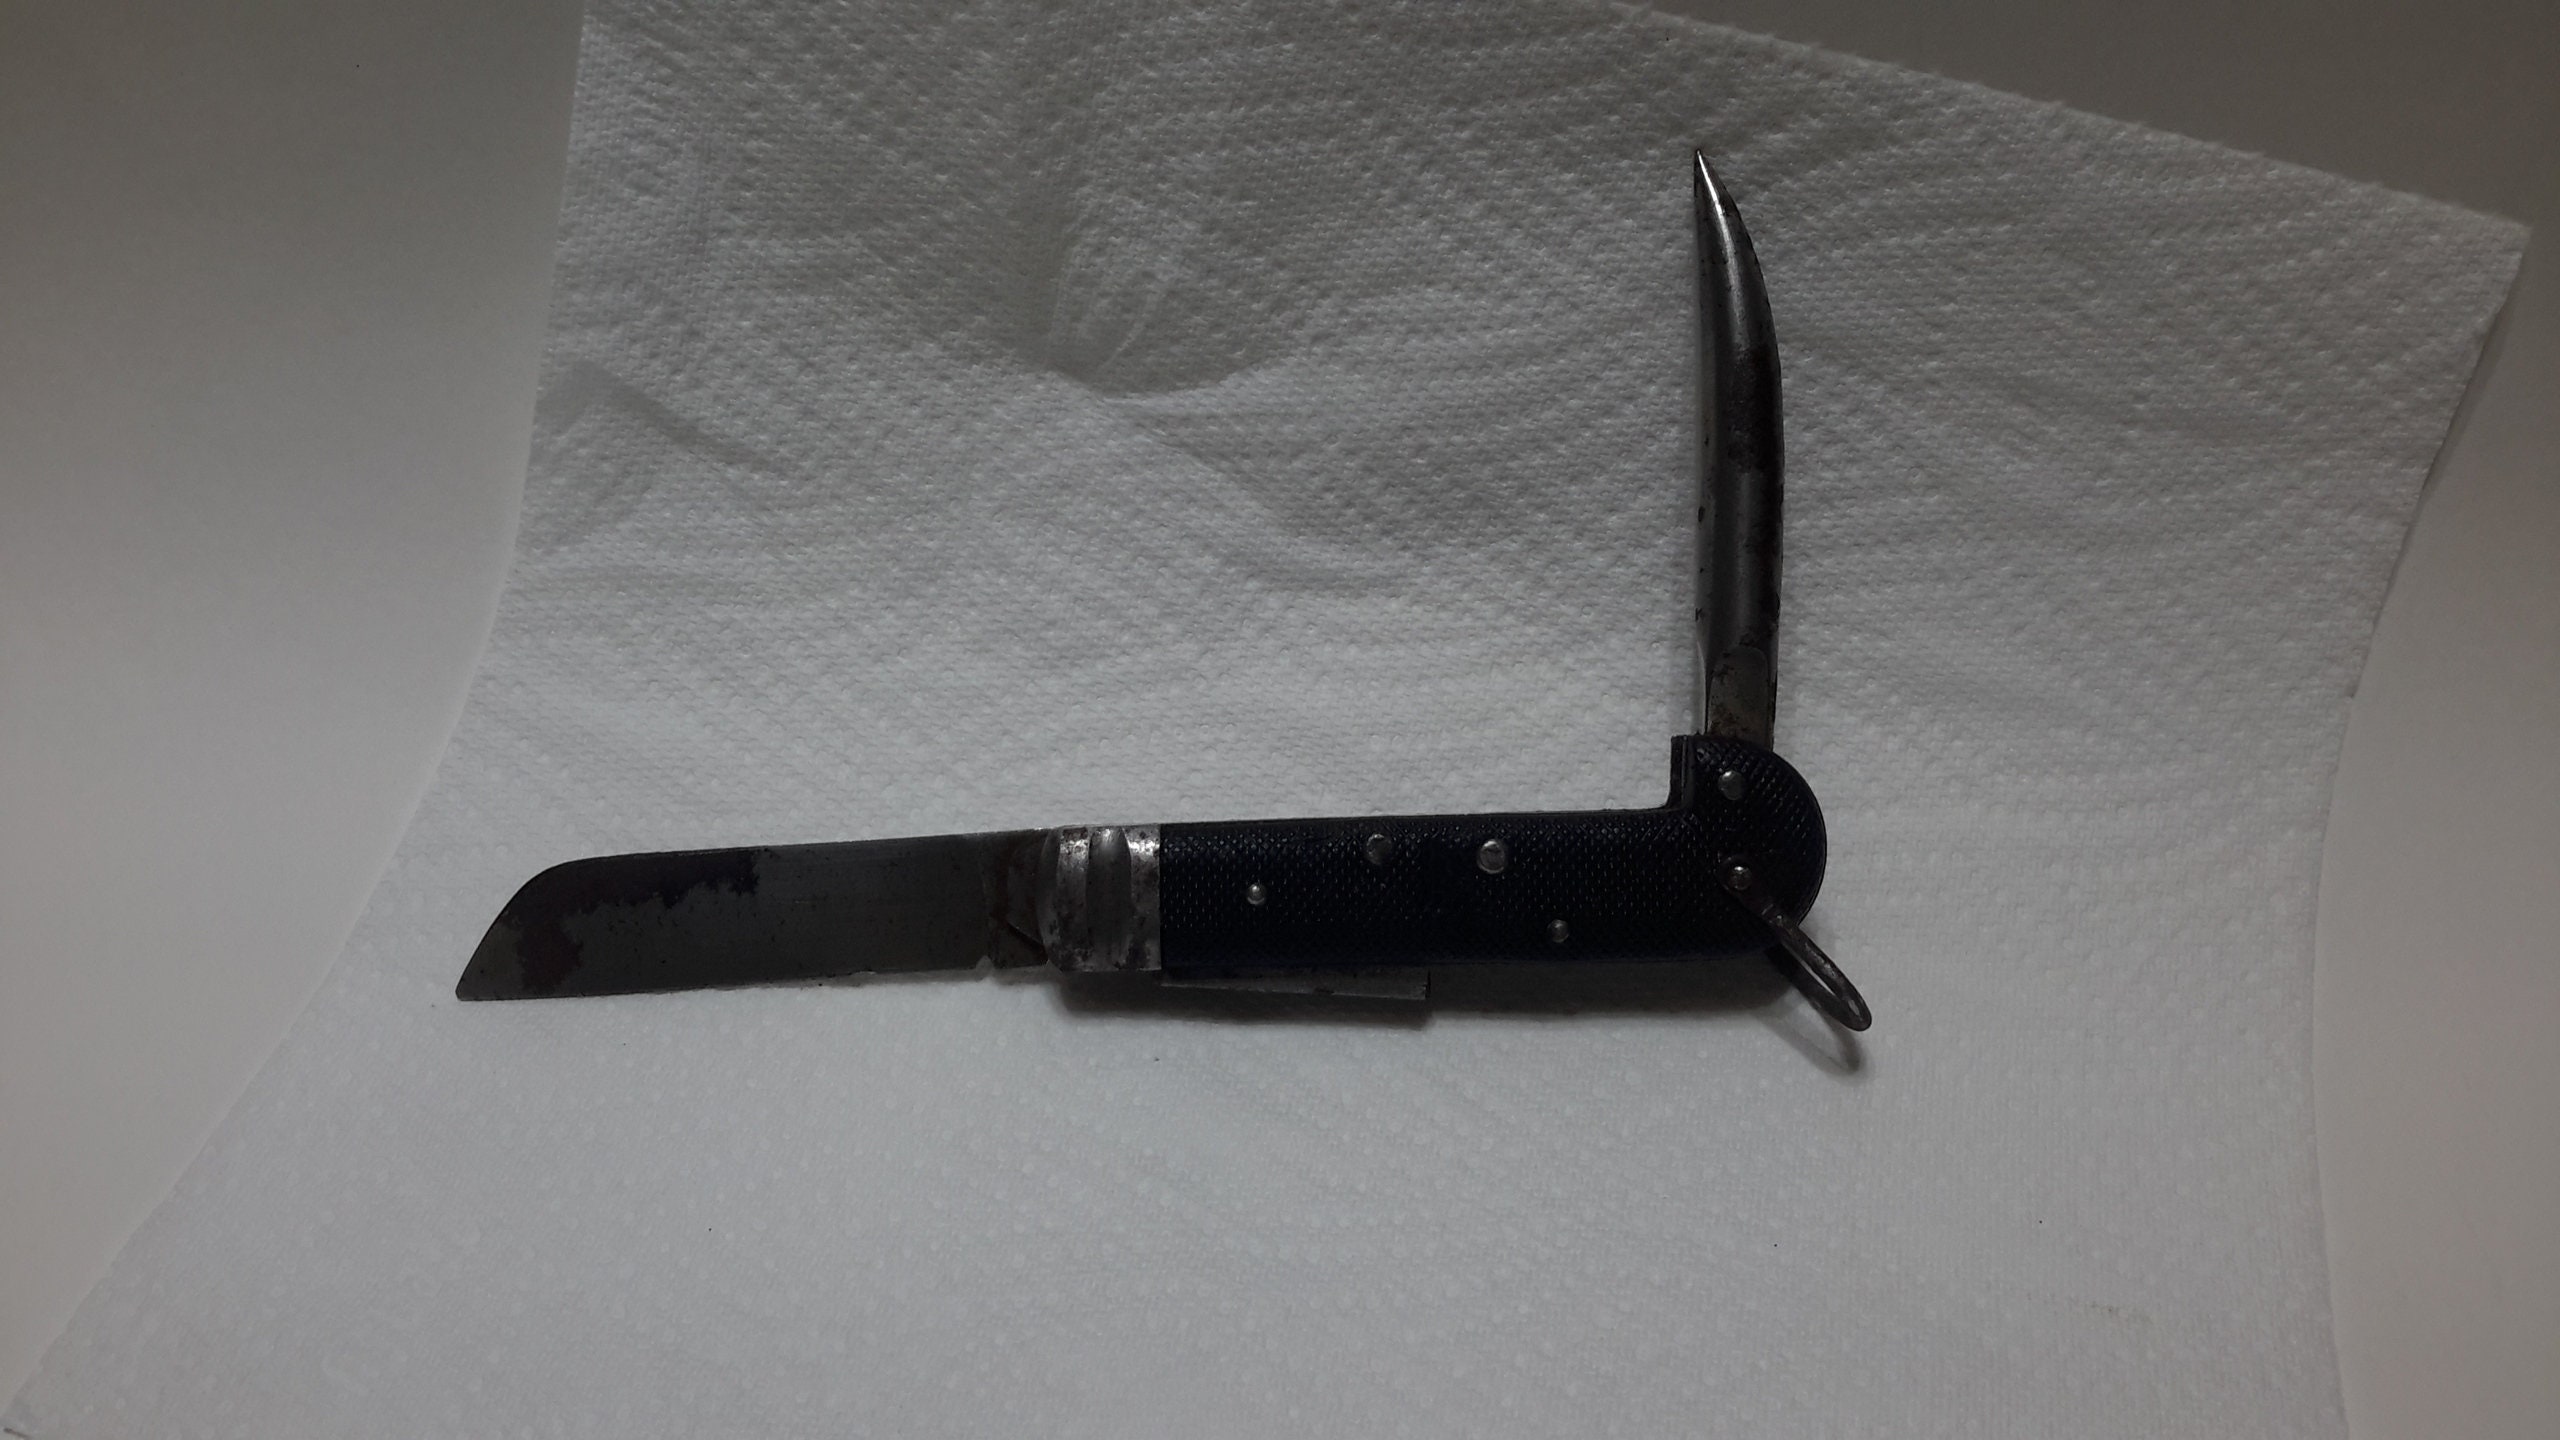 Army Knife From WW2 by Coricama Pocket Folding With Spike - Etsy